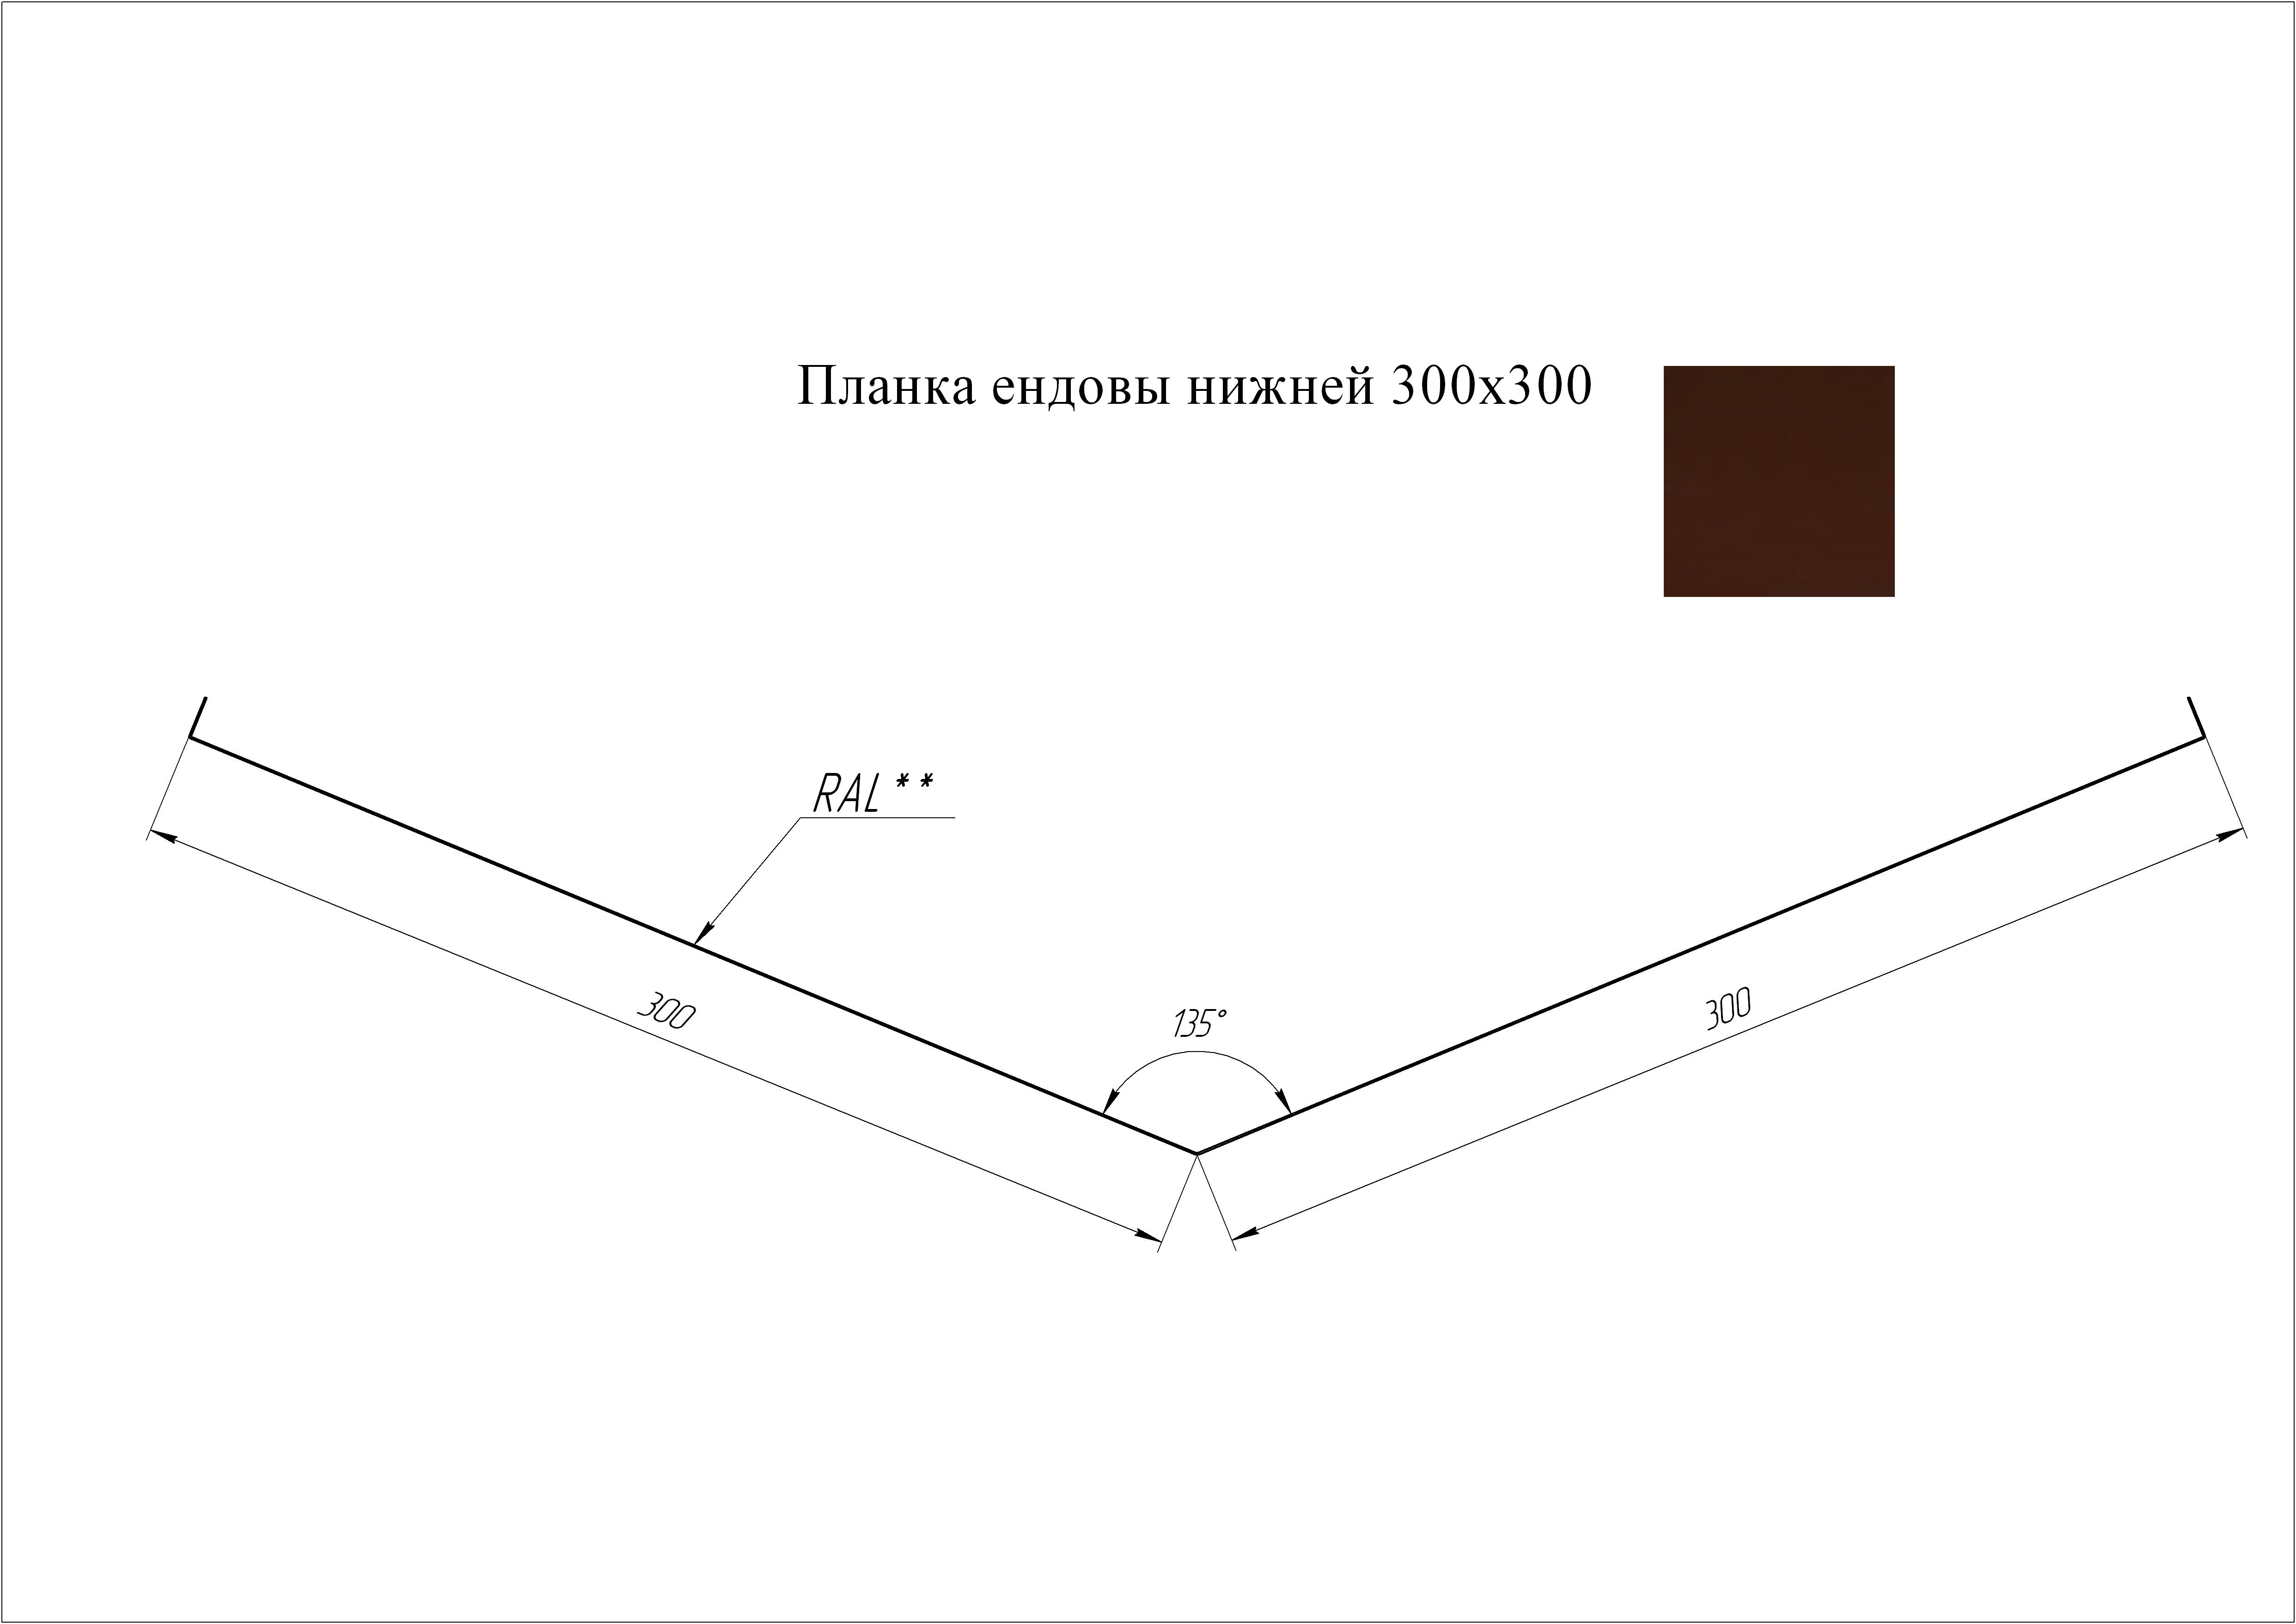 Ендова нижняя 300*300 мм L=3 м GL Atlas RAL 8017 - коричневый шоколад